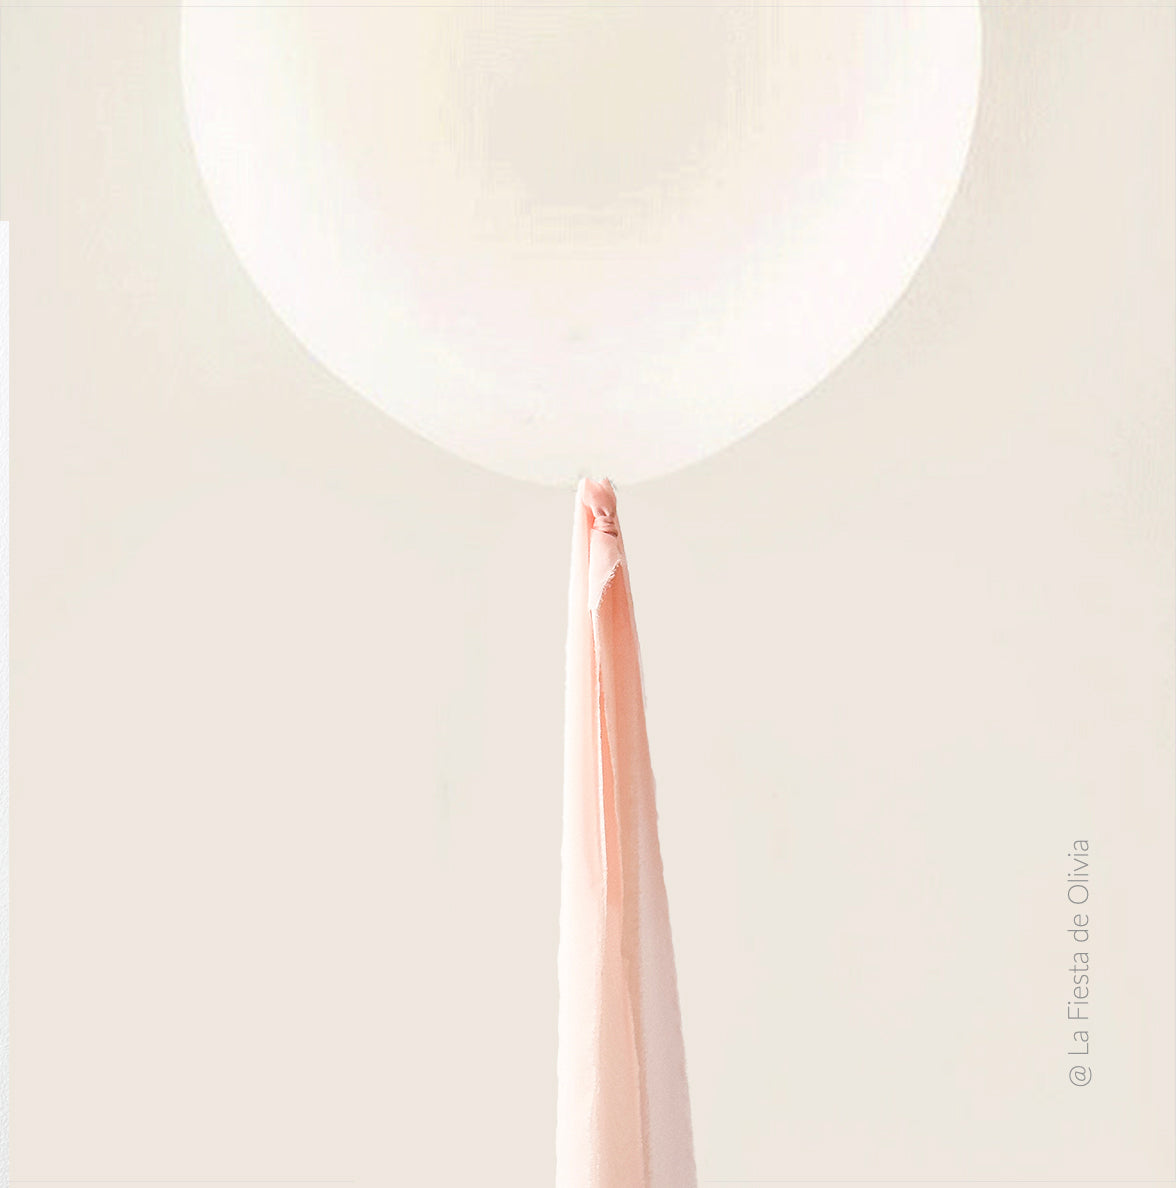 L balão decorado gaze Nude